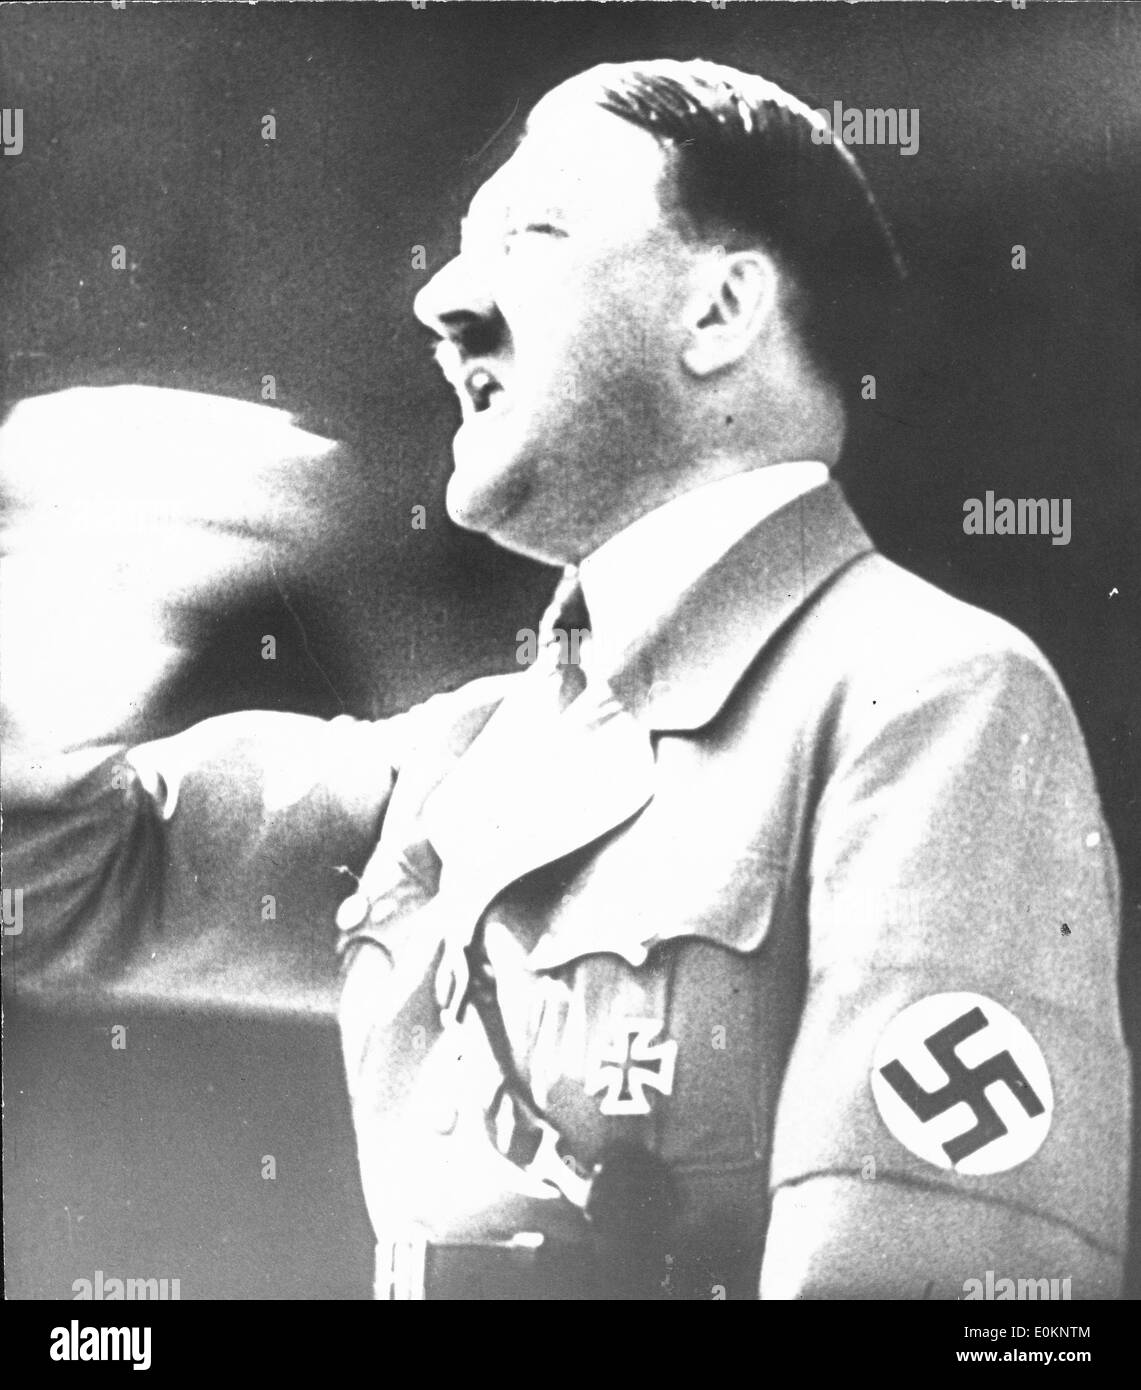 Adolf Hitler giving a powerful speech Stock Photo